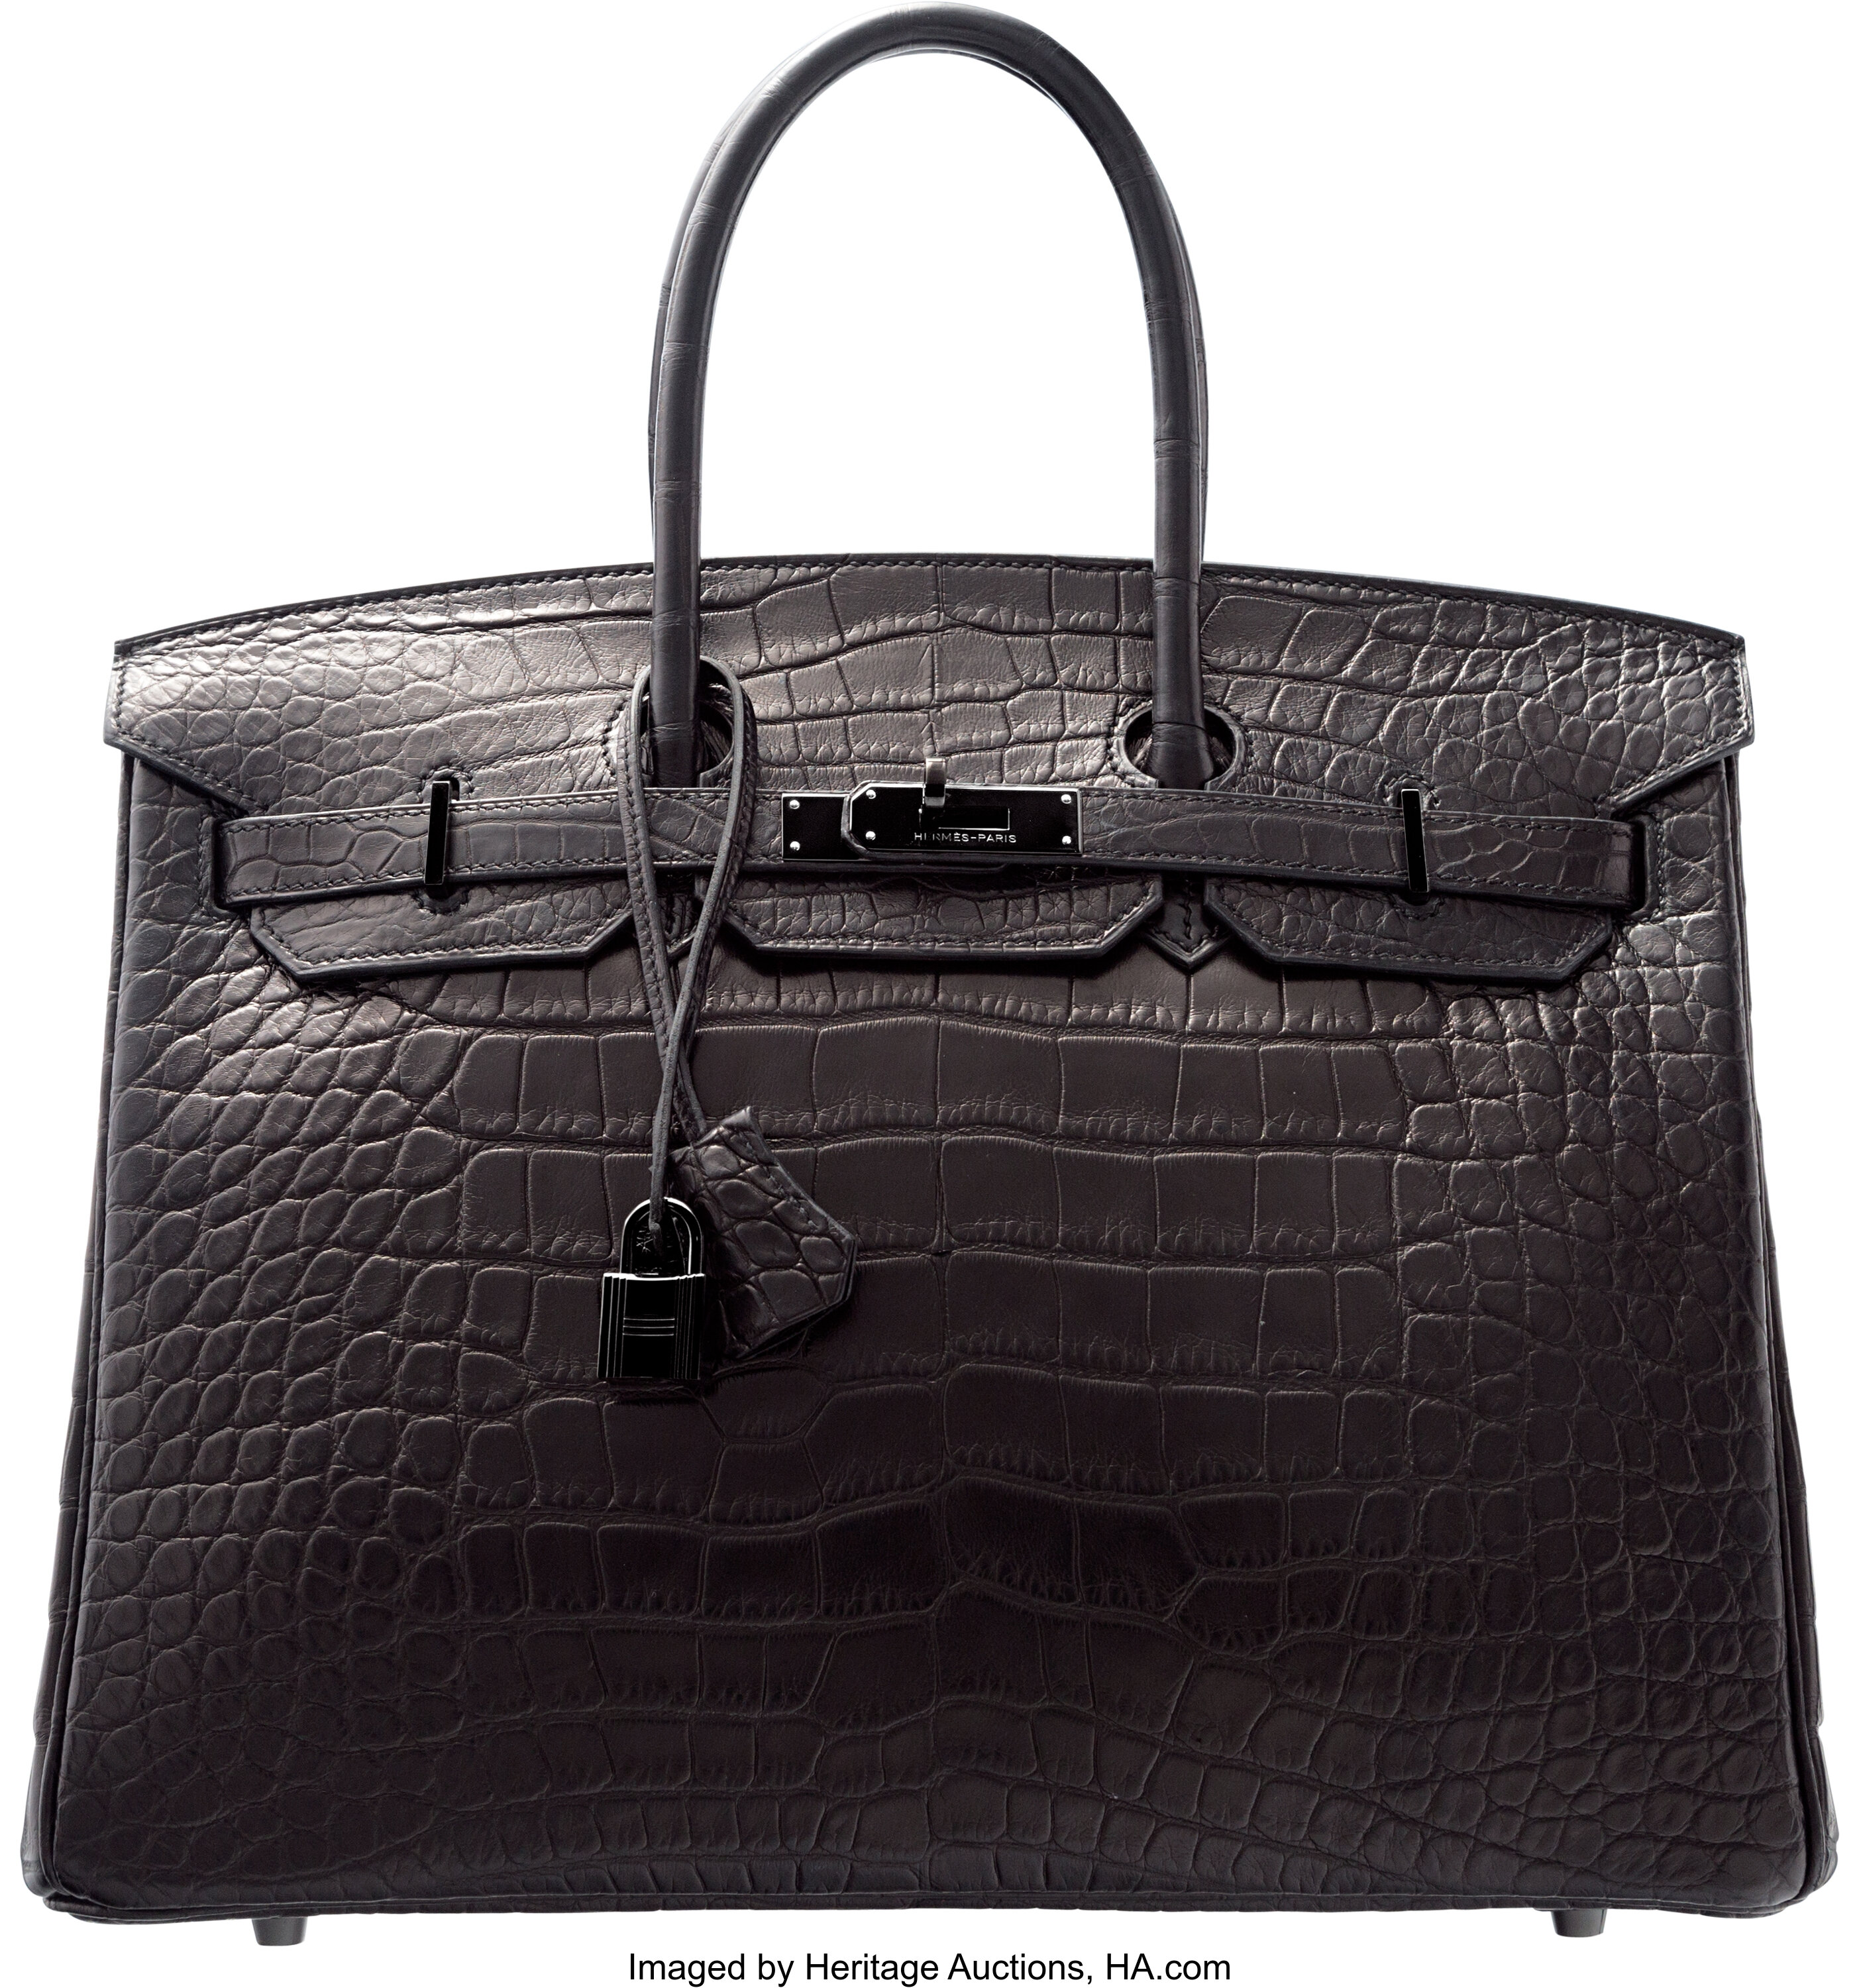 Sold at Auction: Hermes Kelly Cut Bag, Gris Paris Grey Matte